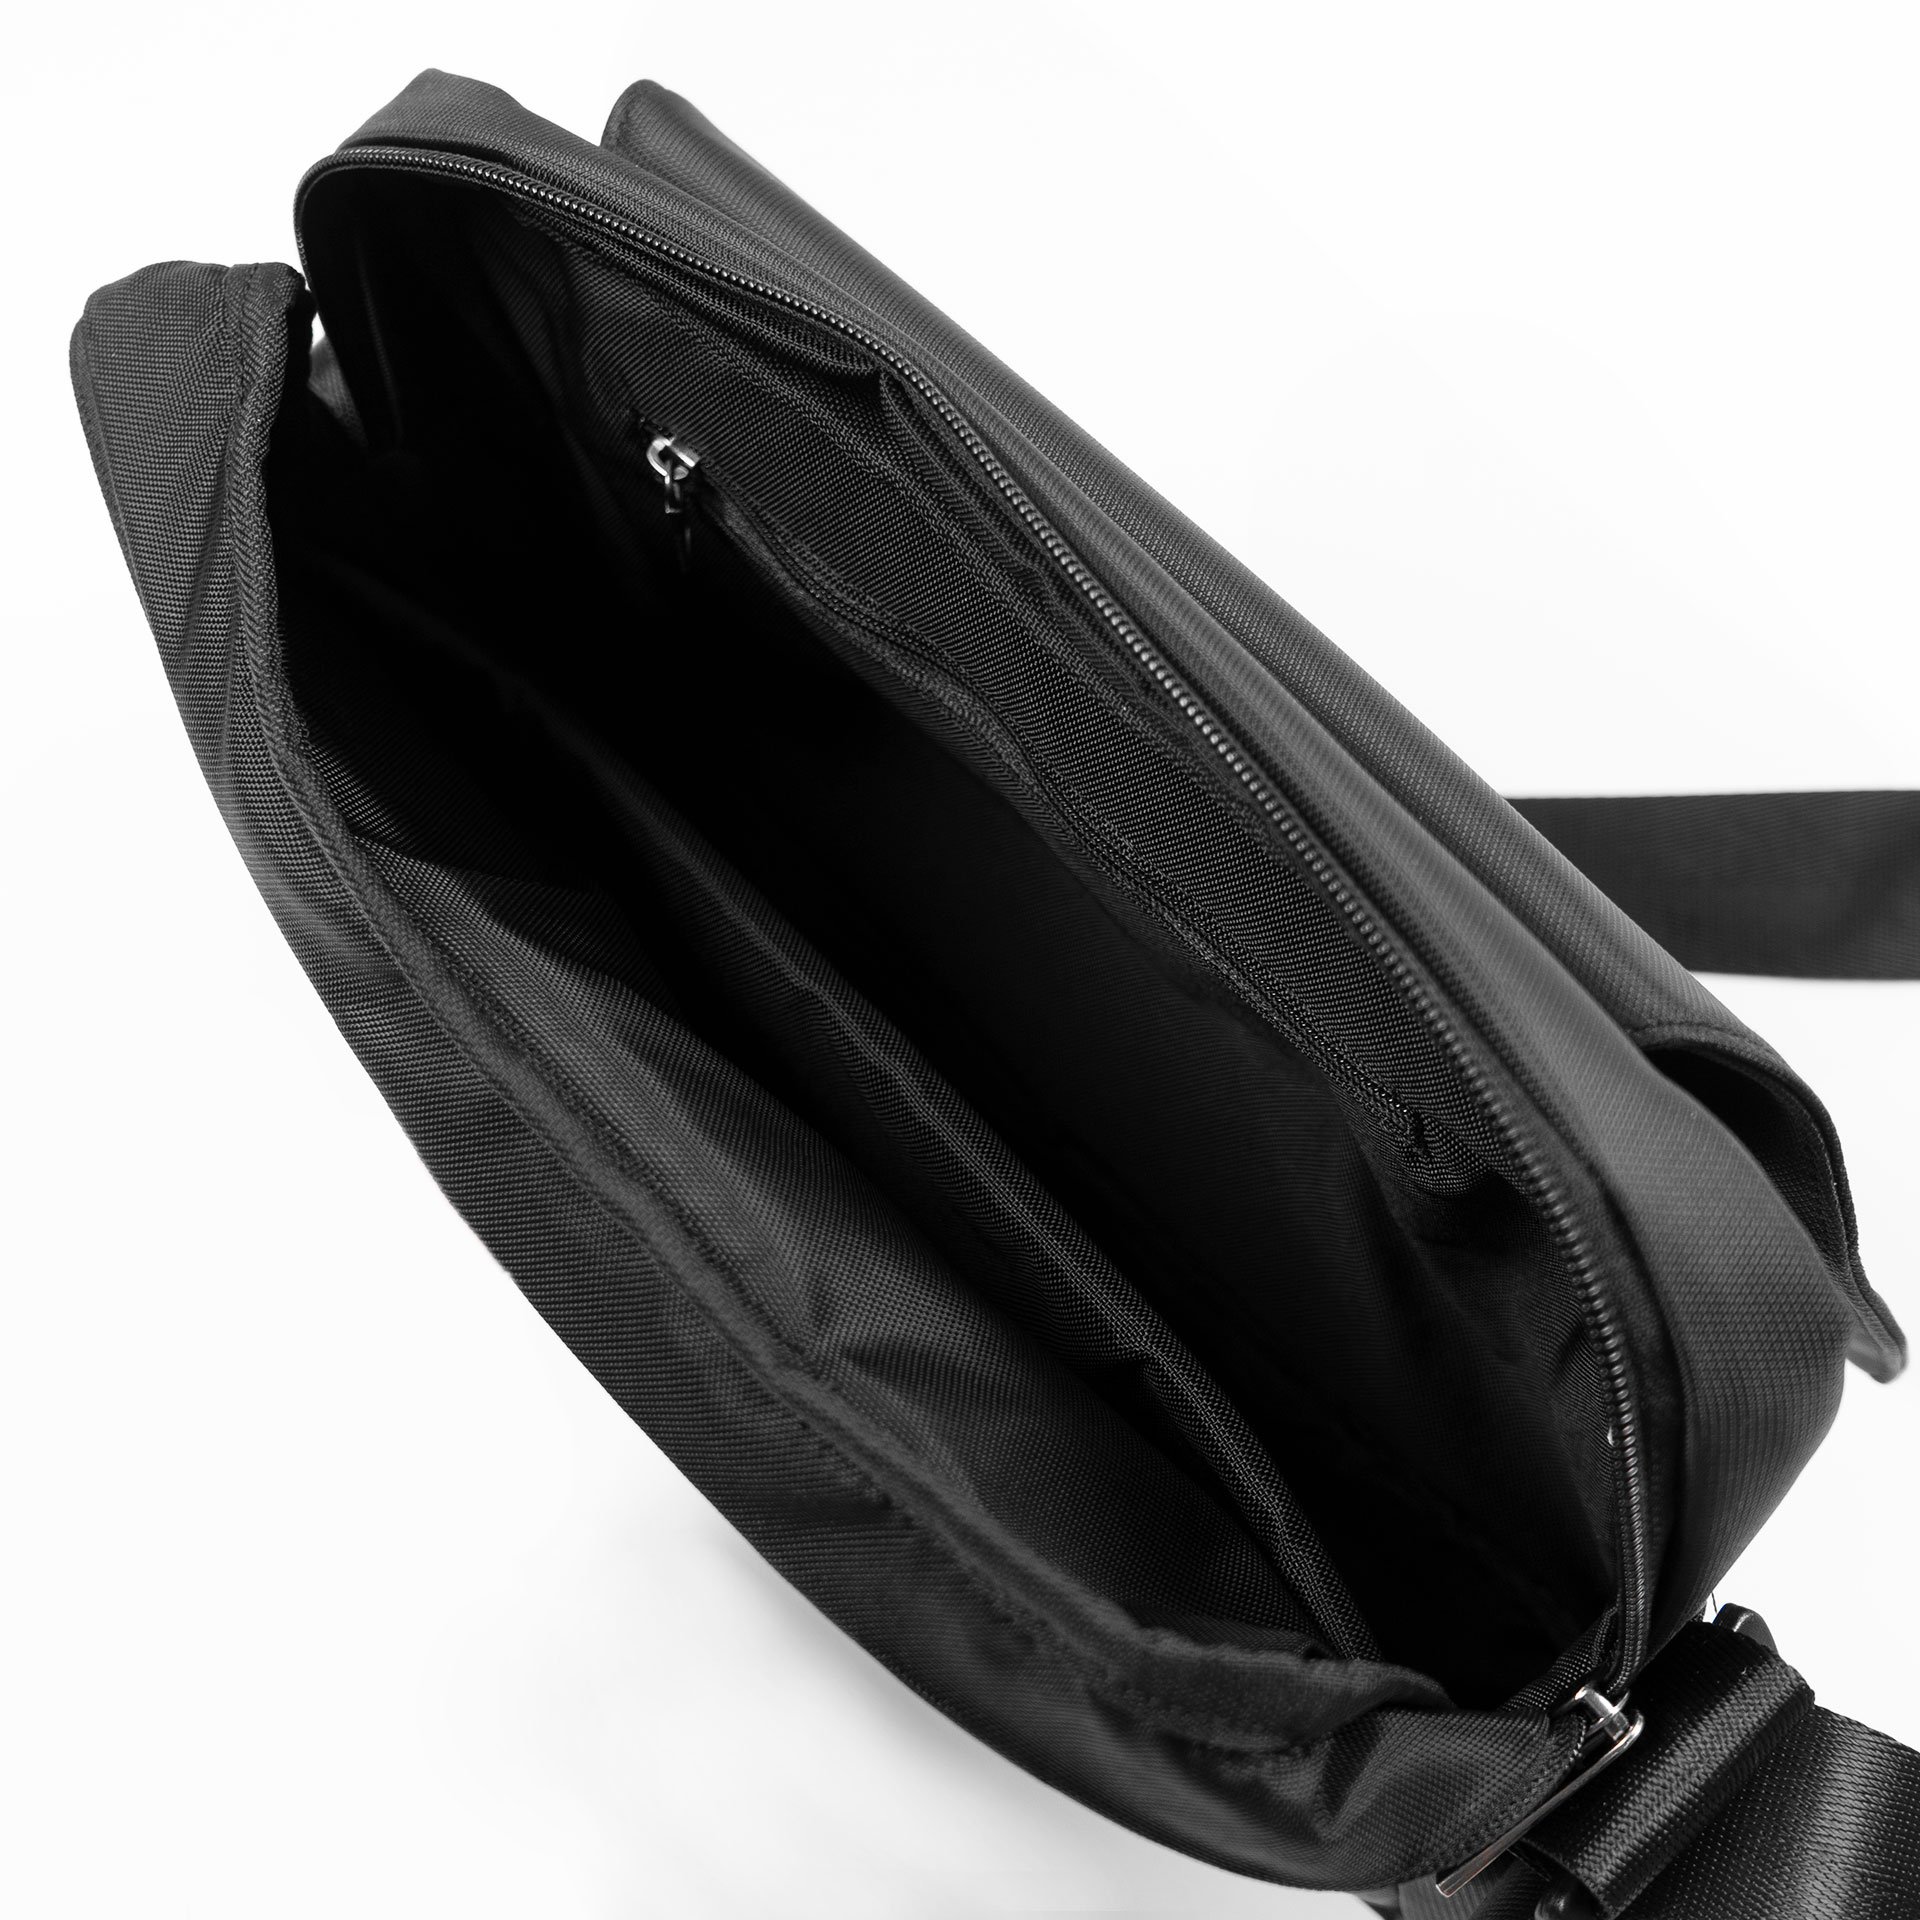 Túi messenger ipad cao cấp Fimax, túi đéo chéo nam đựng ipad chất liệu vải oxford chống thấm với có nhiều ngăn đựng đồ tiện lợi dùng để đeo đi làm đi học đi chơi